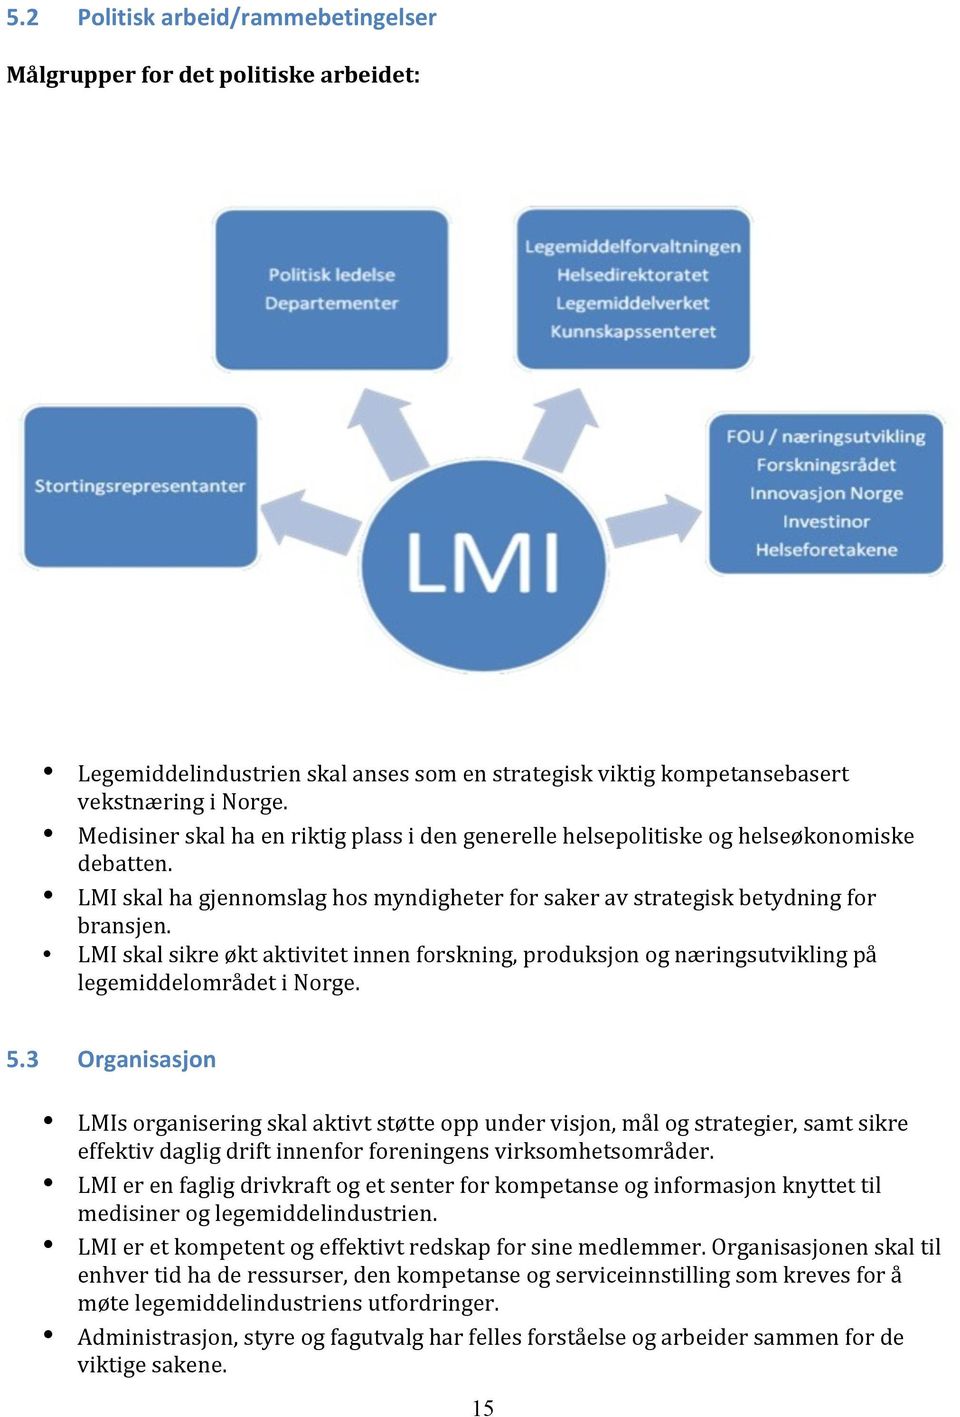 LMI skal sikre økt aktivitet innen forskning, produksjon og næringsutvikling på legemiddelområdet i Norge. 5.